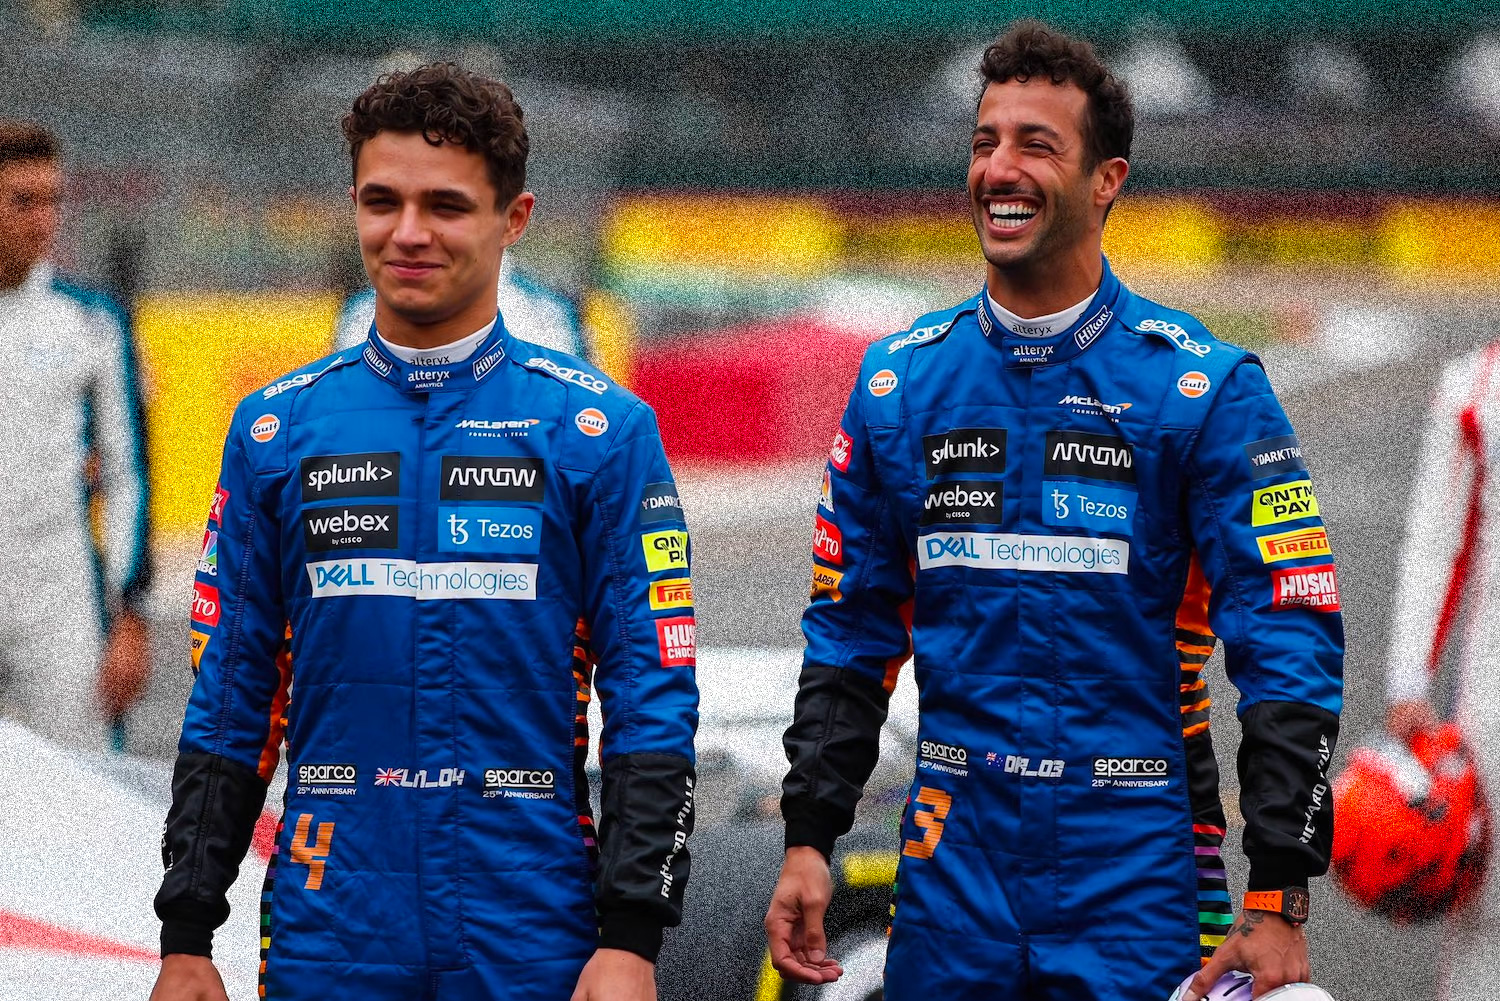 Daniel Ricciardo Trolls Teammate At Brazil’s Formula 1 Grand Prix